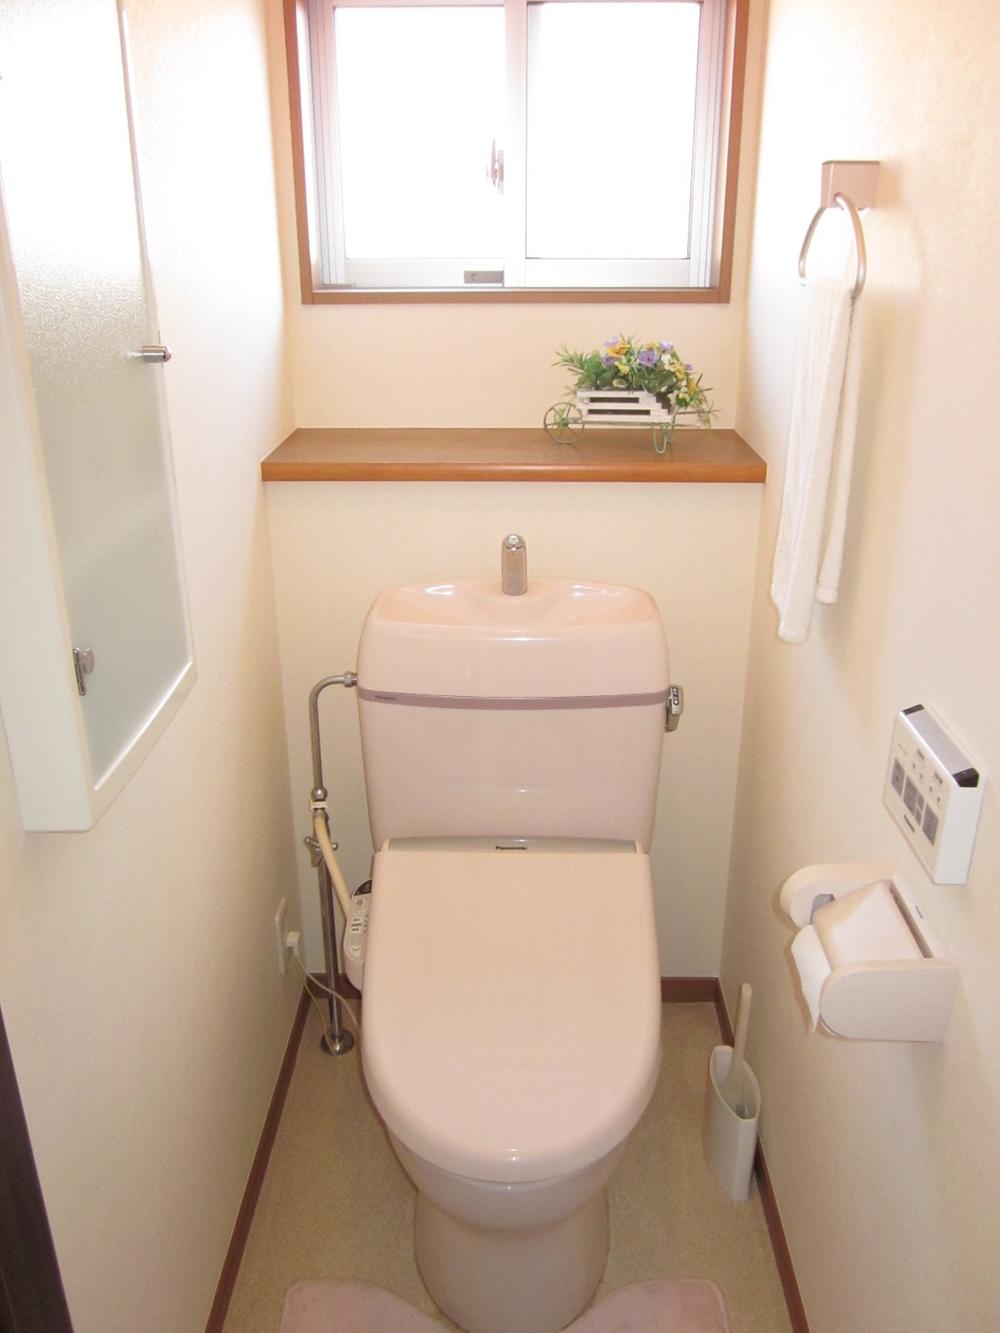 Toilet. Second floor toilet / Indoor (12 May 2013) Shooting